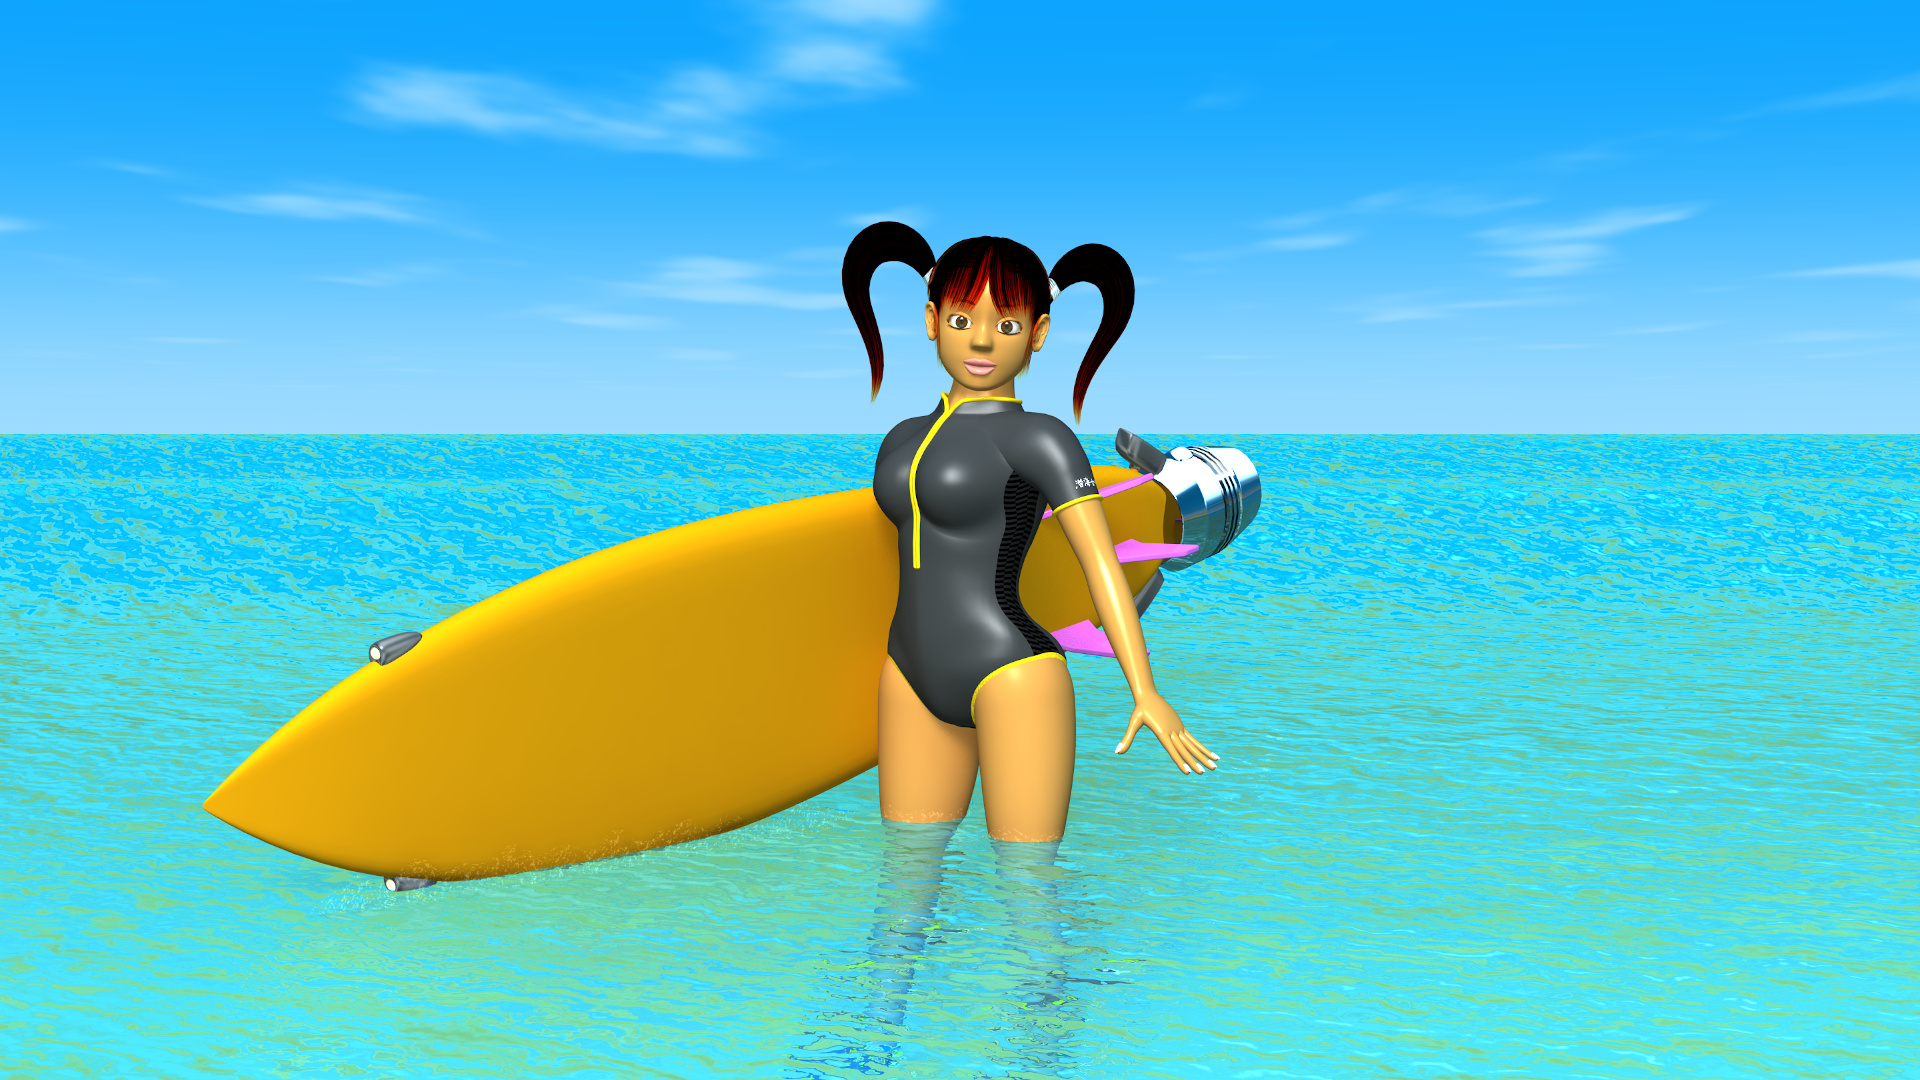 2020年8月 海とサーフボードと3DキャラクターのOL-4